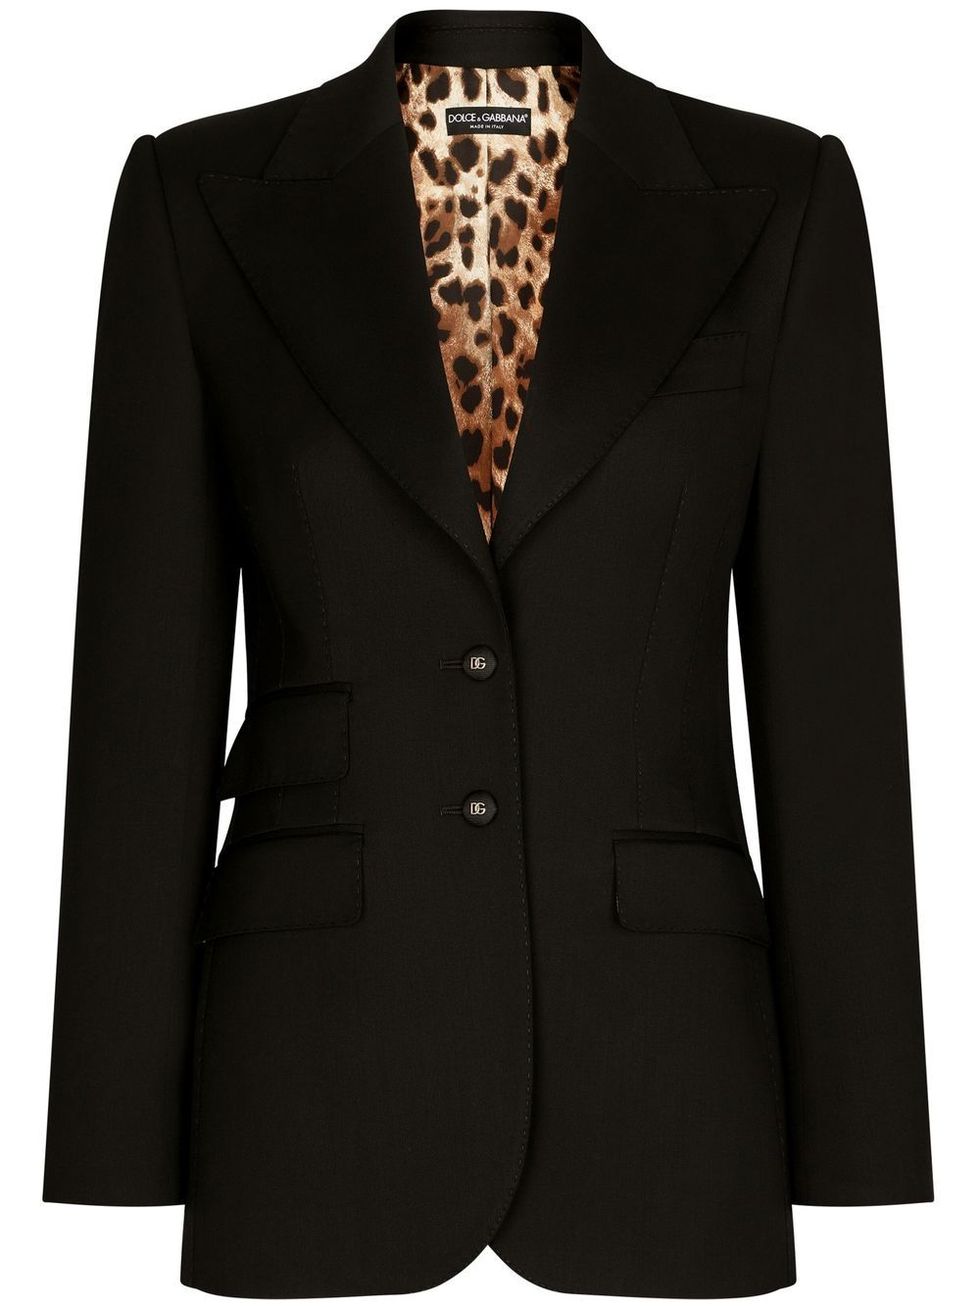 Tailleur nero con dettagli animalier, Dolce & Gabbana